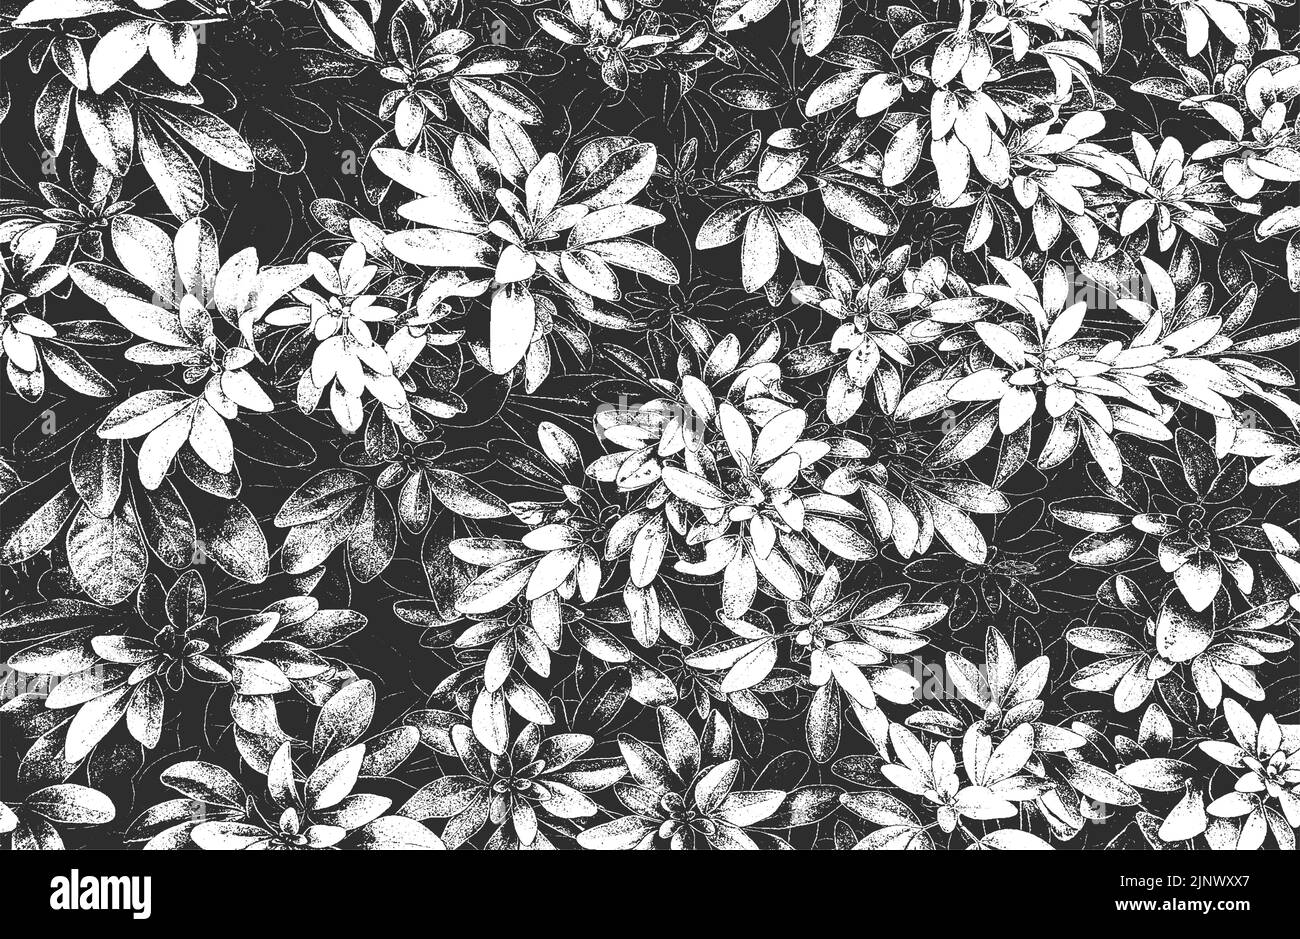 Revestimiento envejecido hoja de madera macro textura con rayas. Fondo blanco y negro grunge. Ilustración vectorial de semitonos abstracta Ilustración del Vector